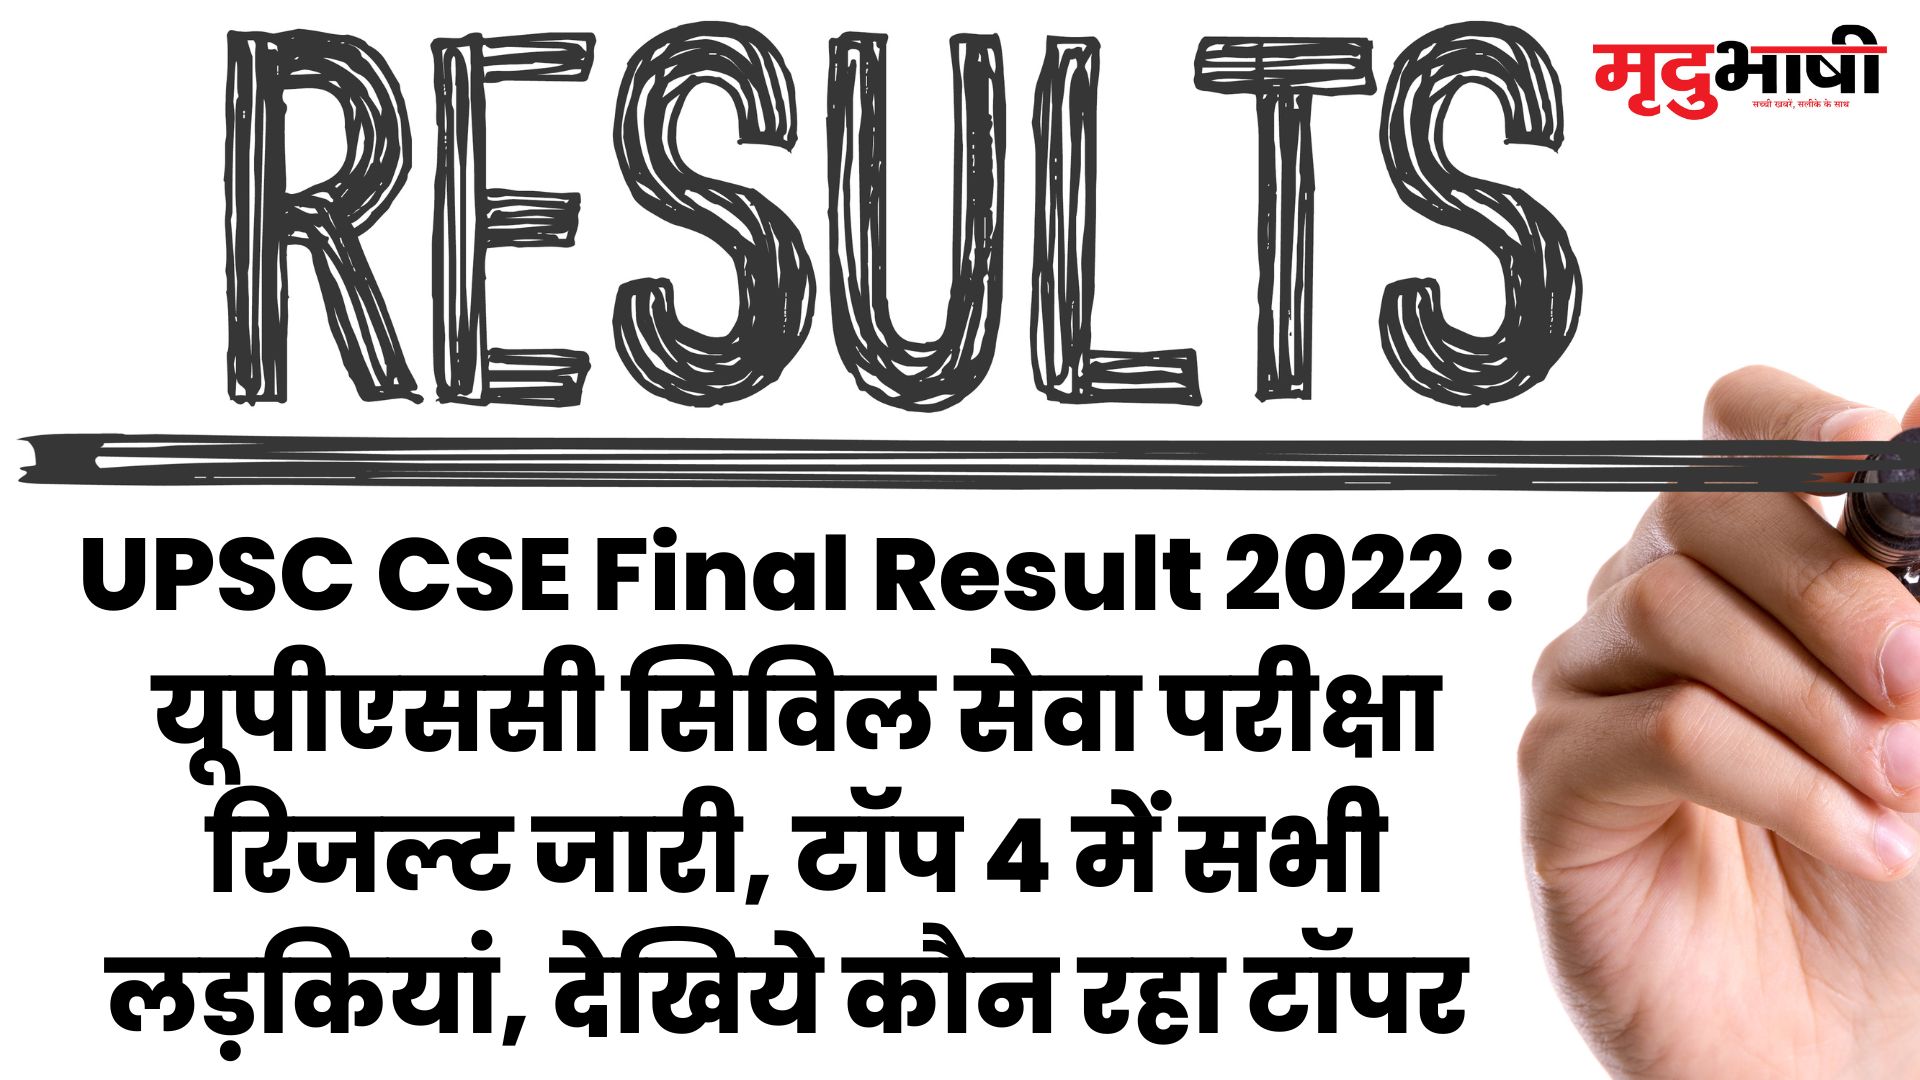 UPSC CSE Final Result 2022 यूपीएससी सिविल सेवा परीक्षा रिजल्ट जारी, टॉप 4 में सभी लड़कियां, देखिये कौन रहा टॉपर